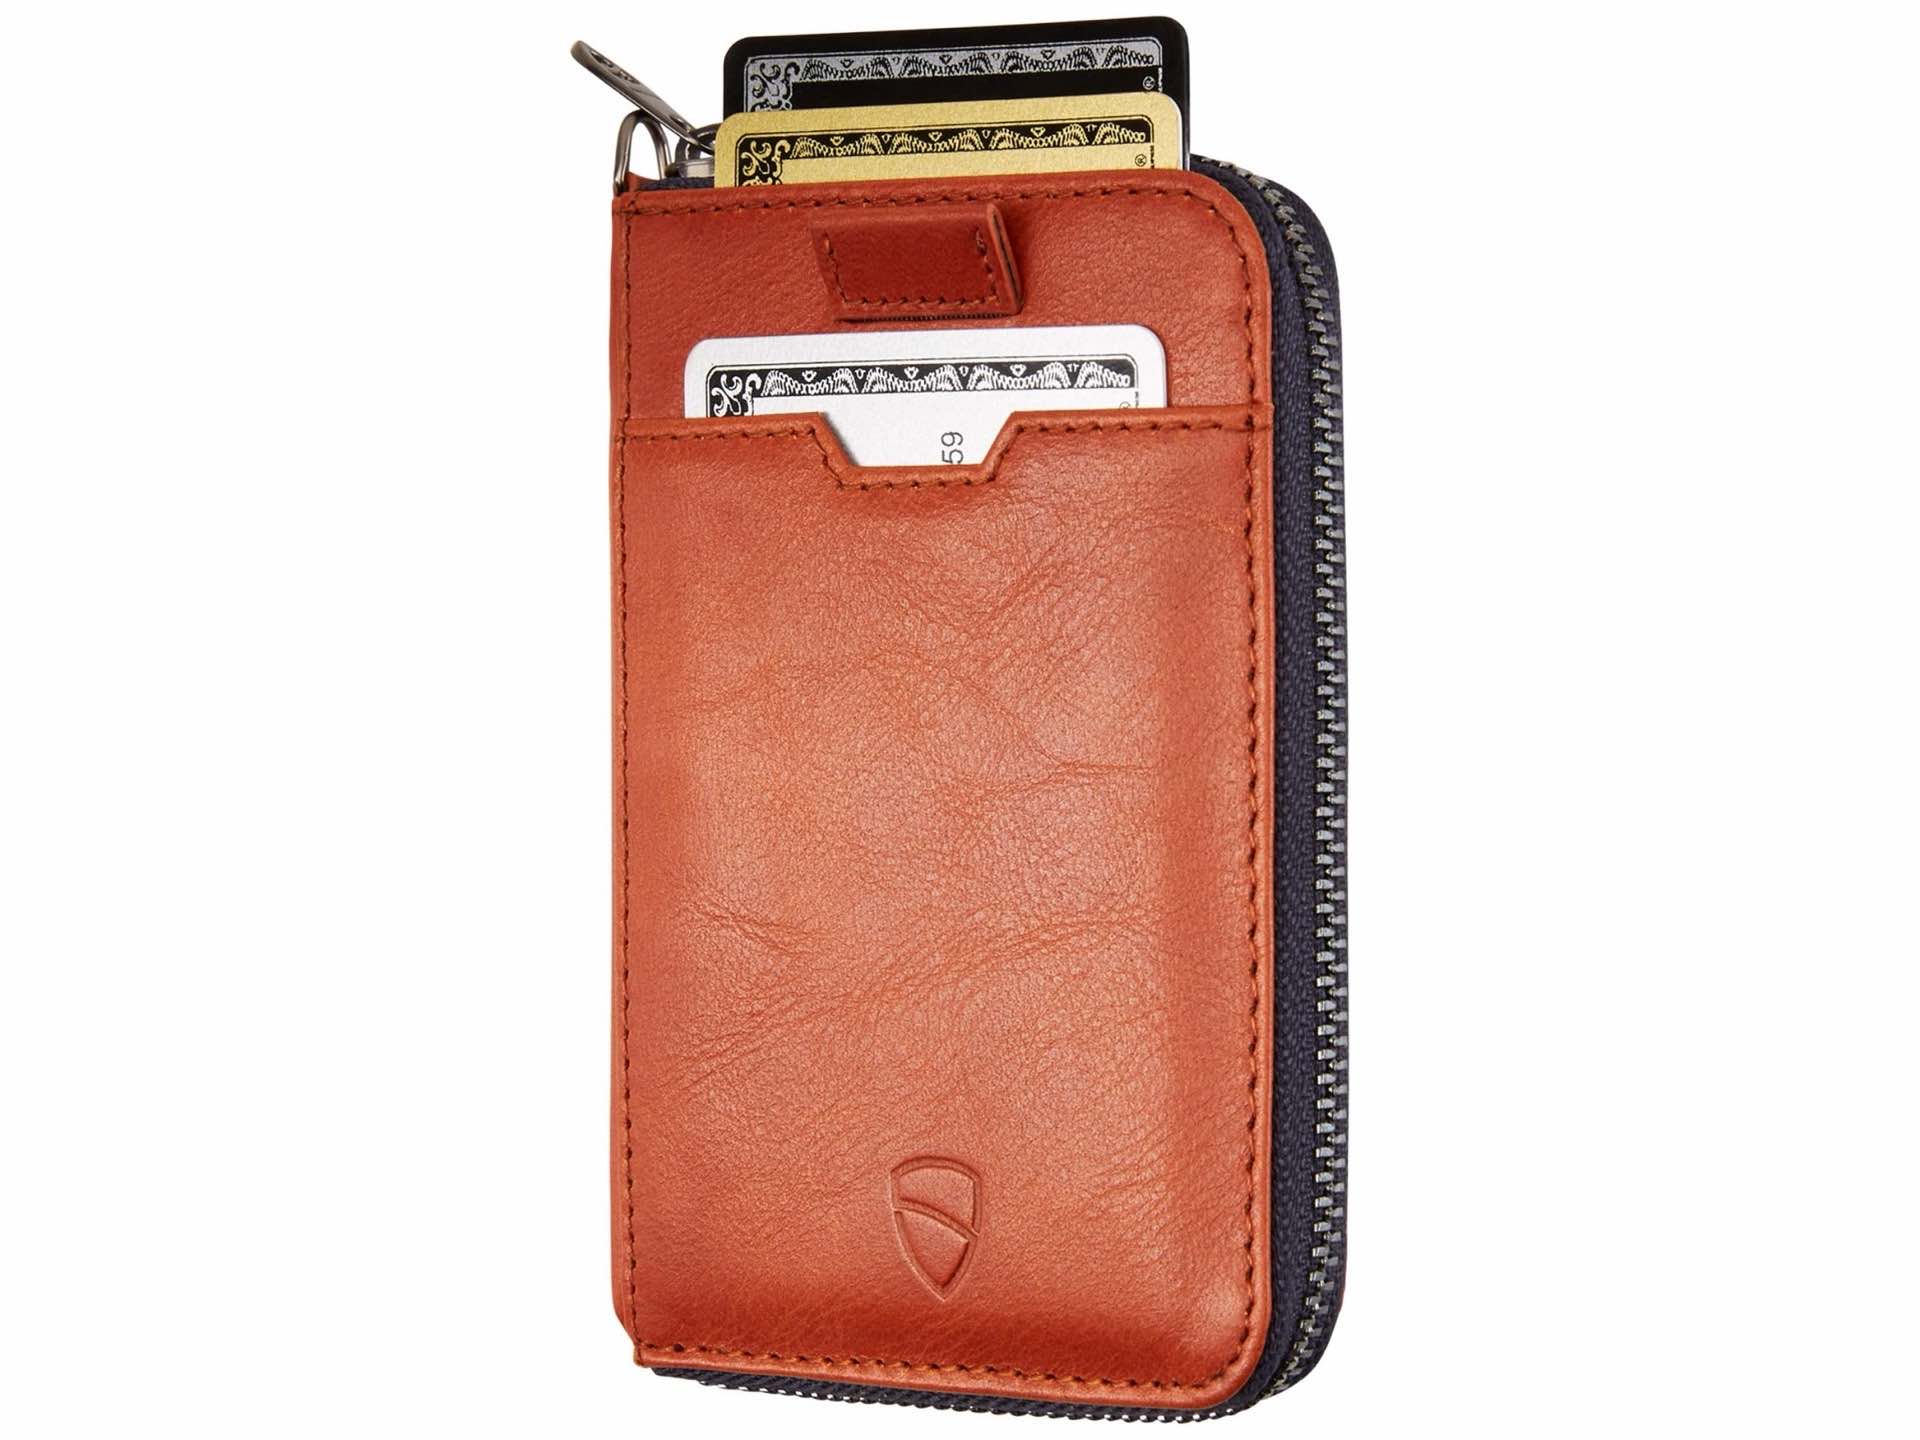 vaultskin-notting-hill-leather-zipper-wallet